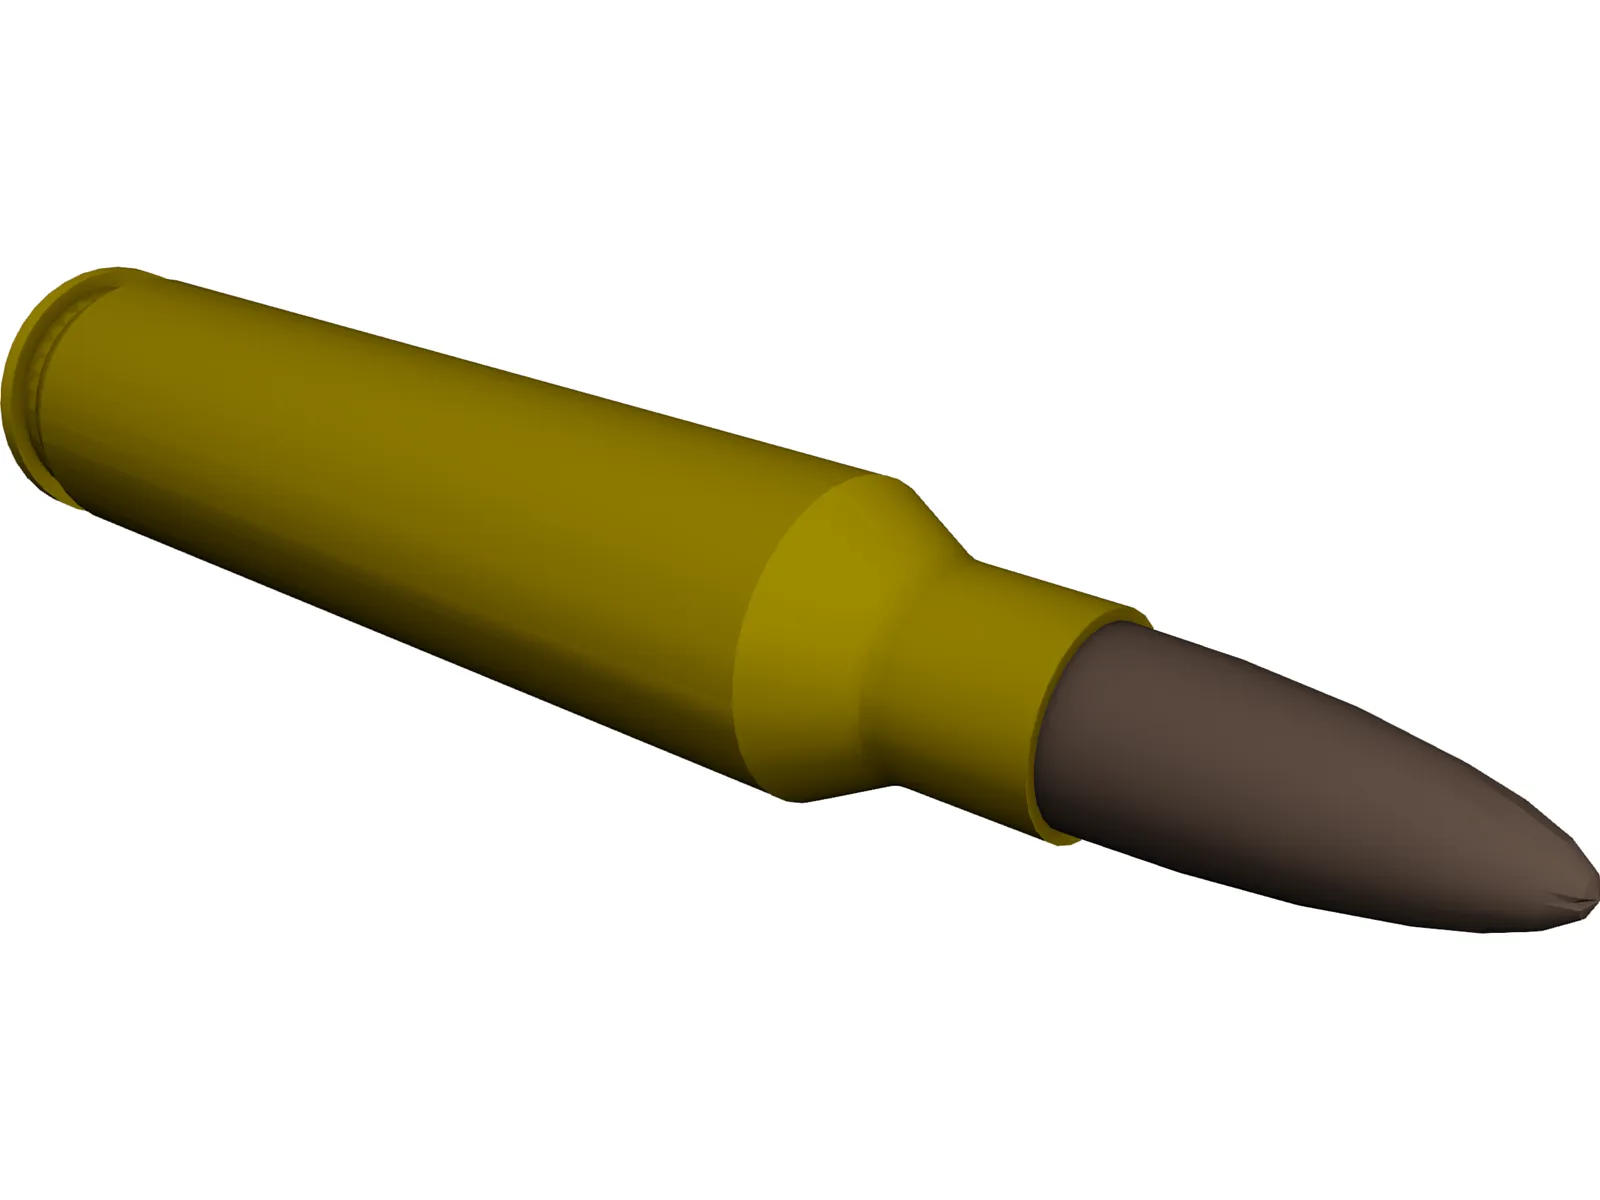 Bullet 5.56 45mm NATO 3D Model